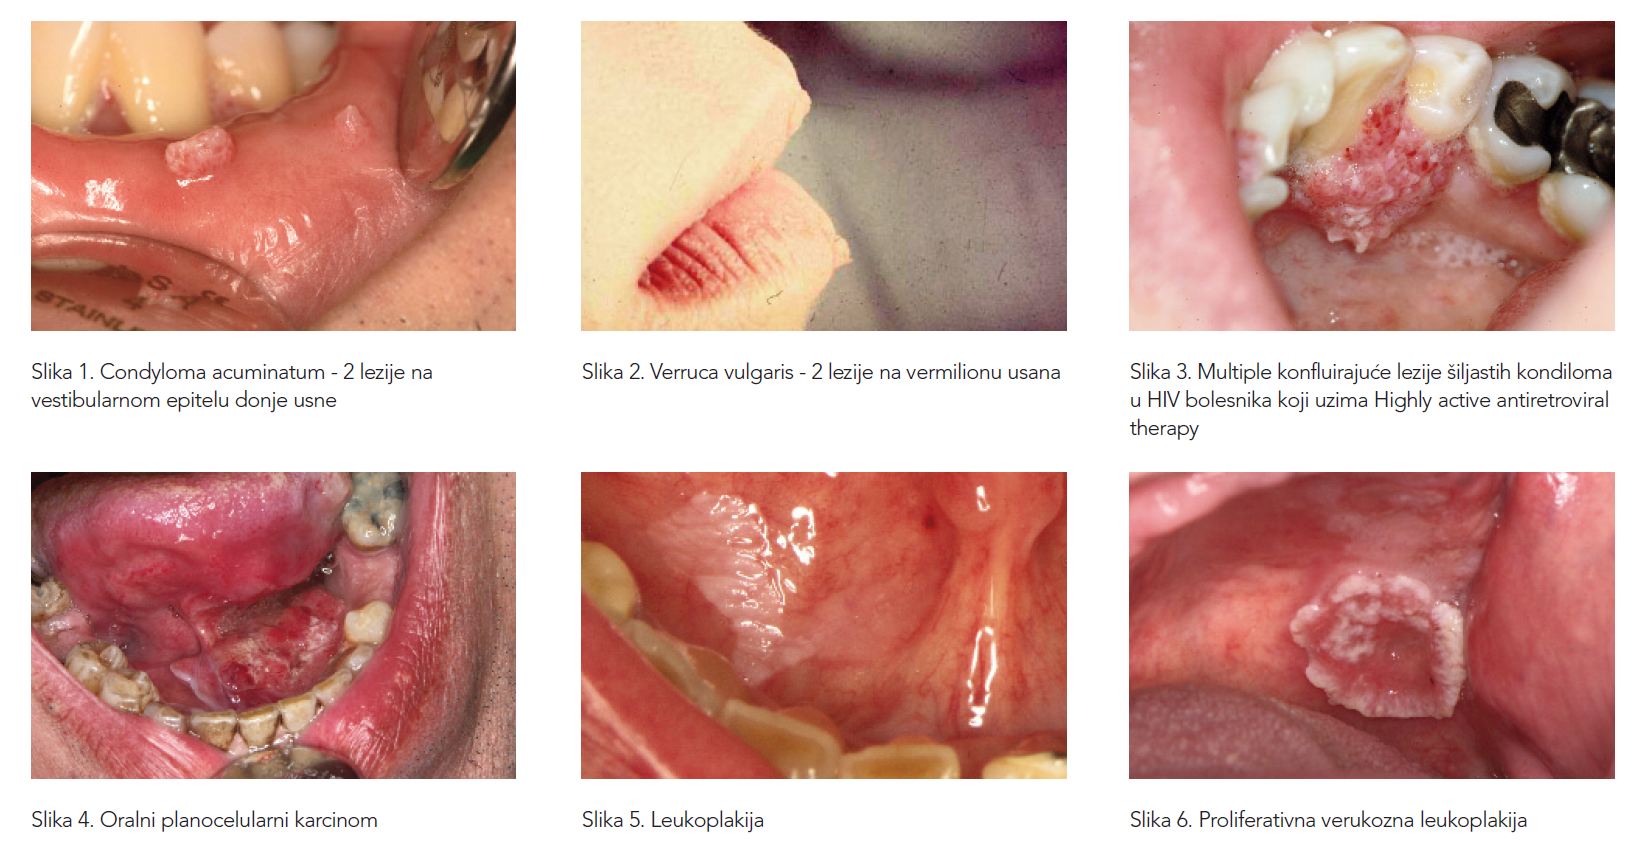 Hpv virus u ustima Category: DEFAULT Hpv virus u ustima